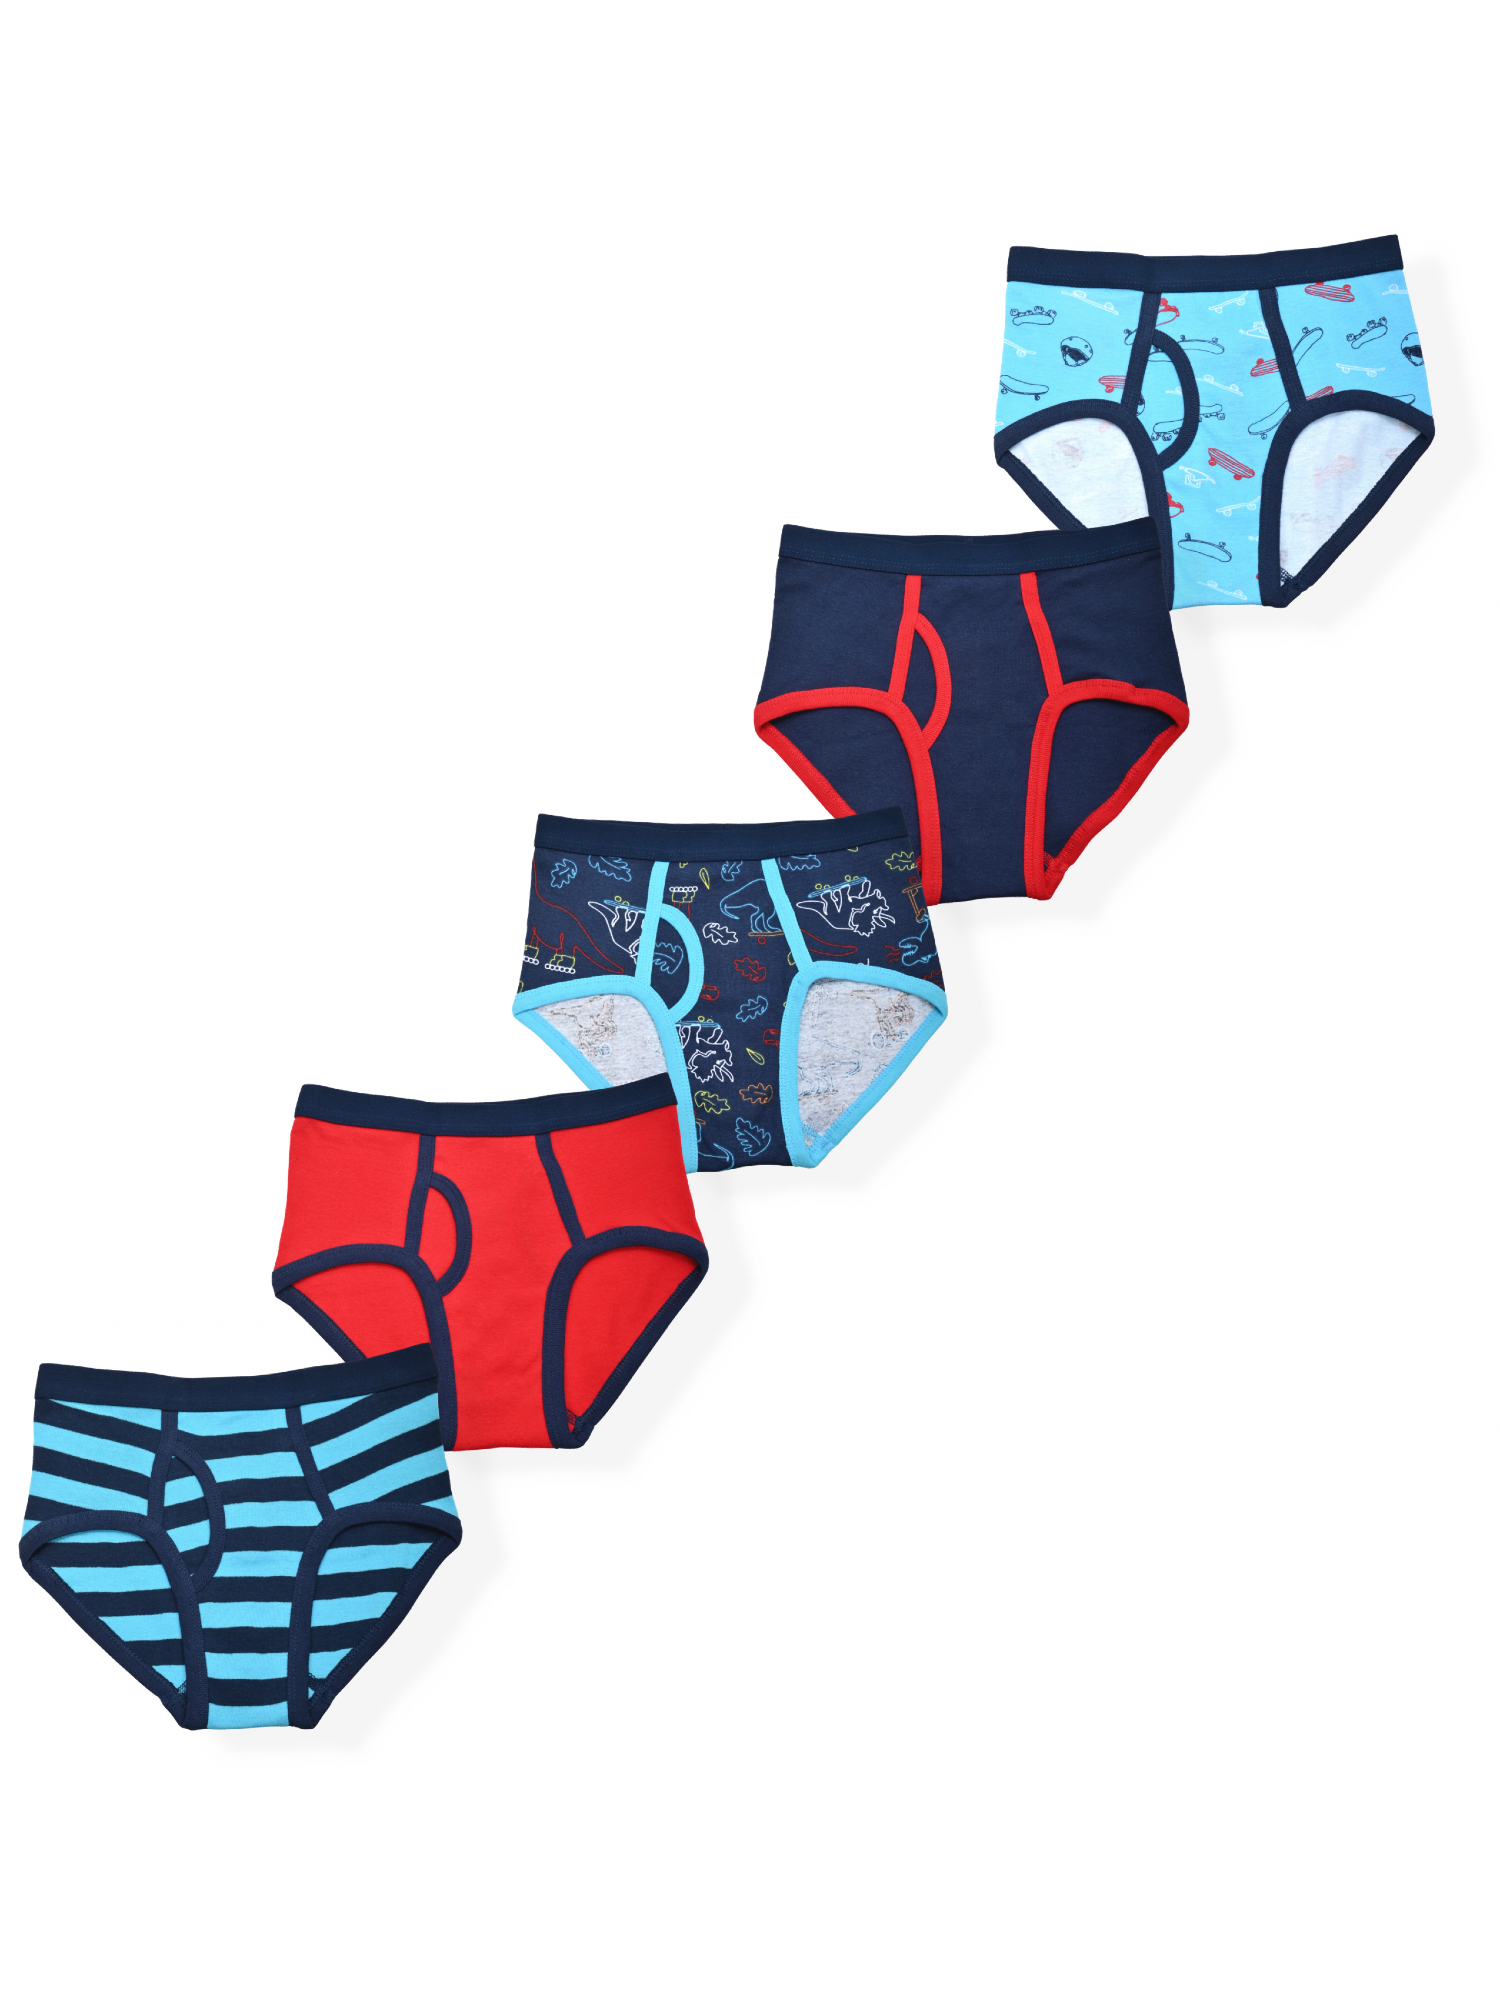 Wonder Nation Boys Brief Underwear, 5-Pack, Sizes S-XL - image 1 of 1